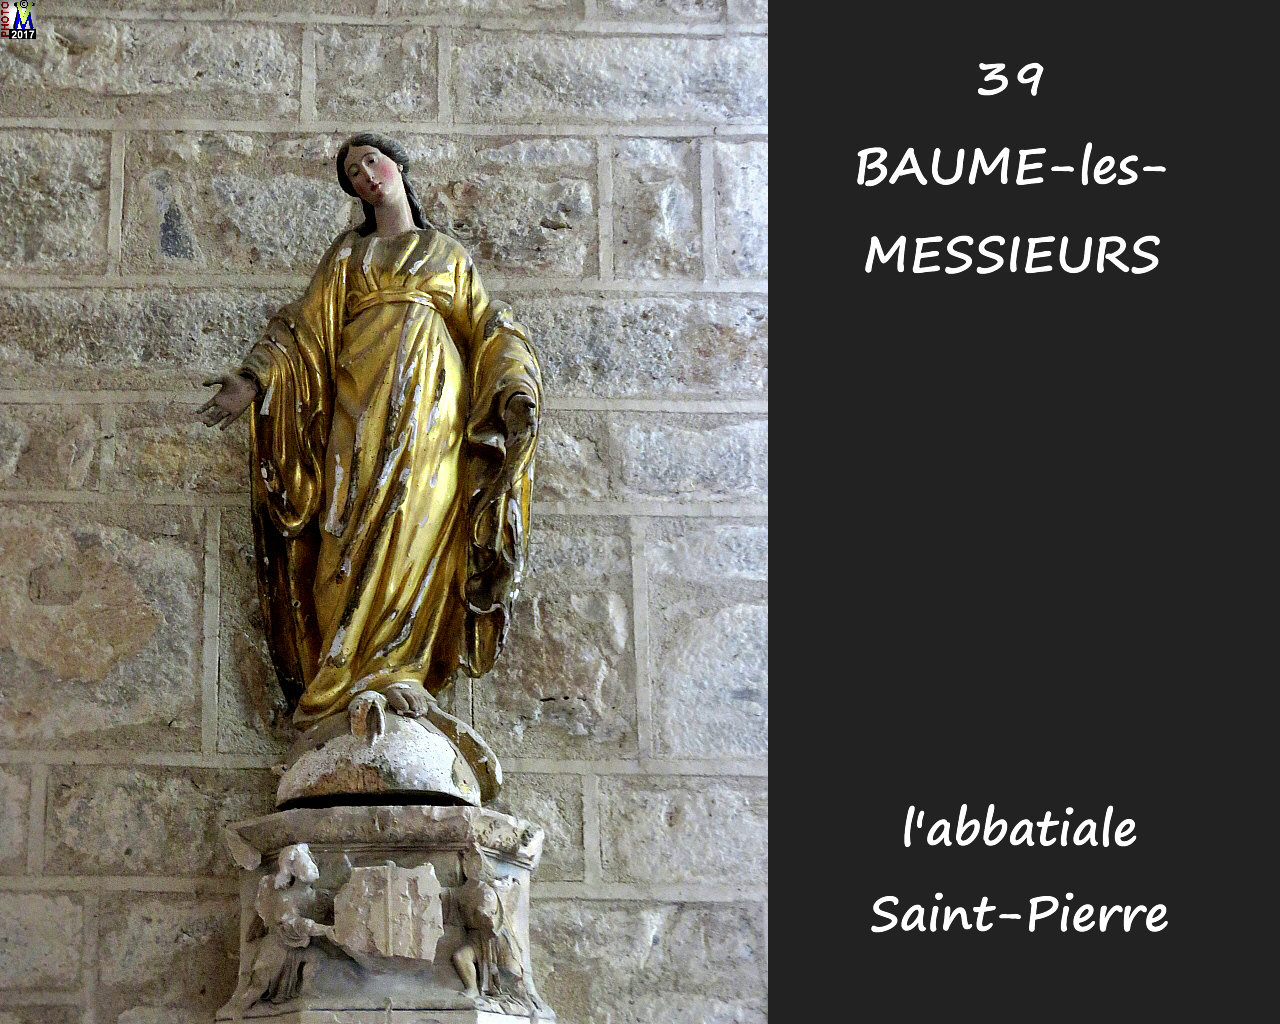 39BAUME-LES-MESSIEURS_abbatiale_282.jpg